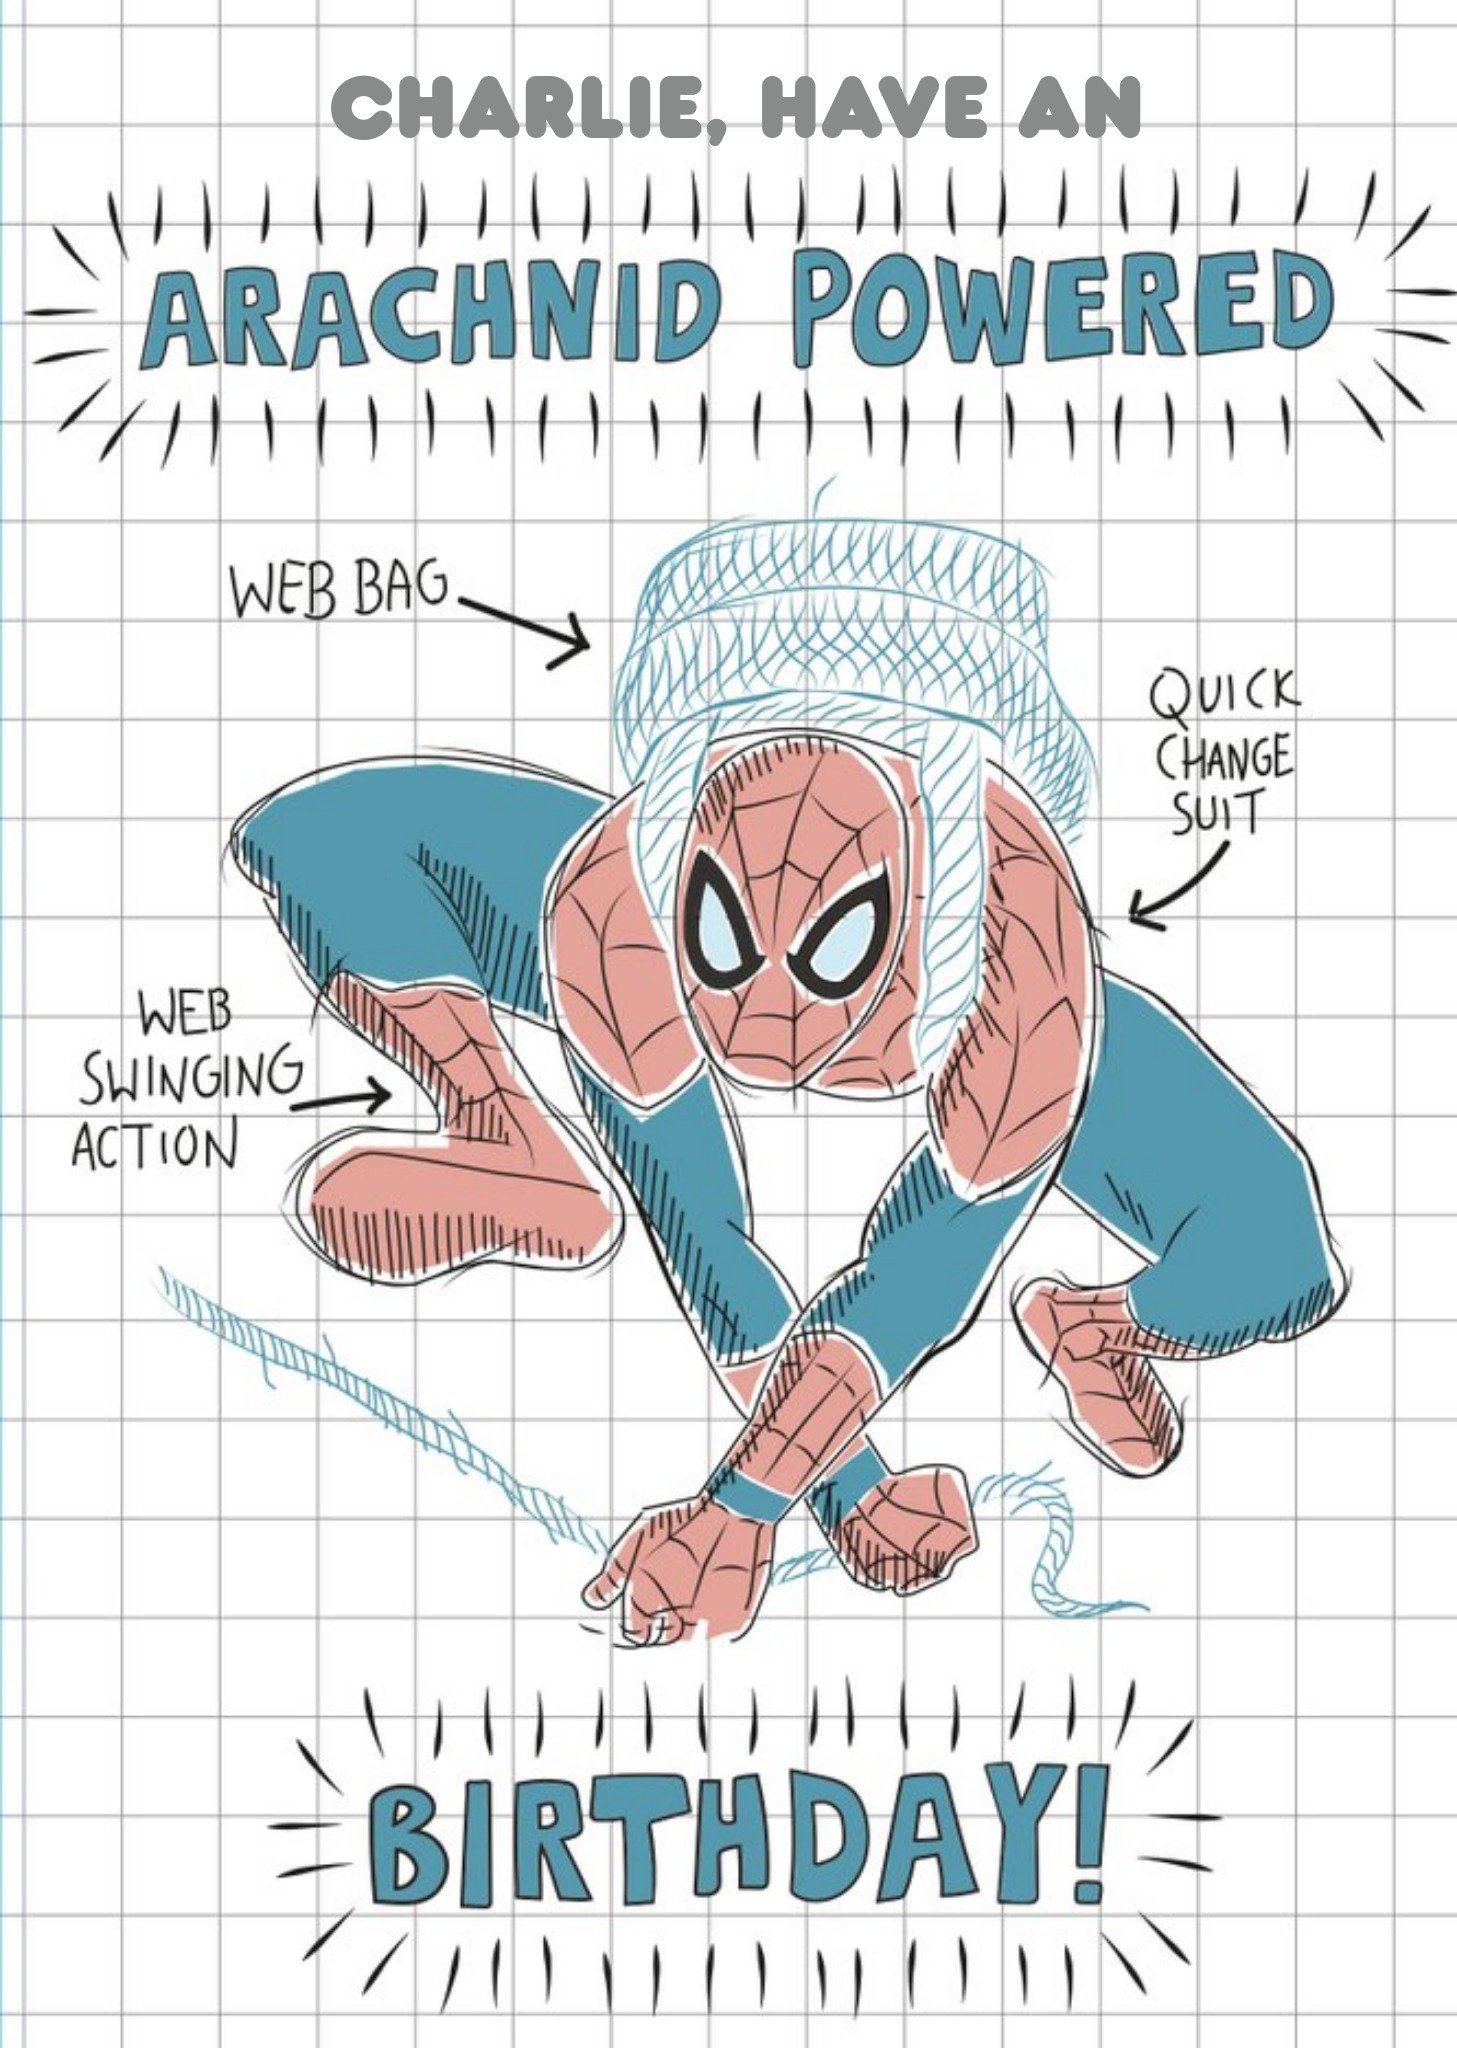 Marvel Spiderman Have An Arachnid Powered Birthday Card Ecard